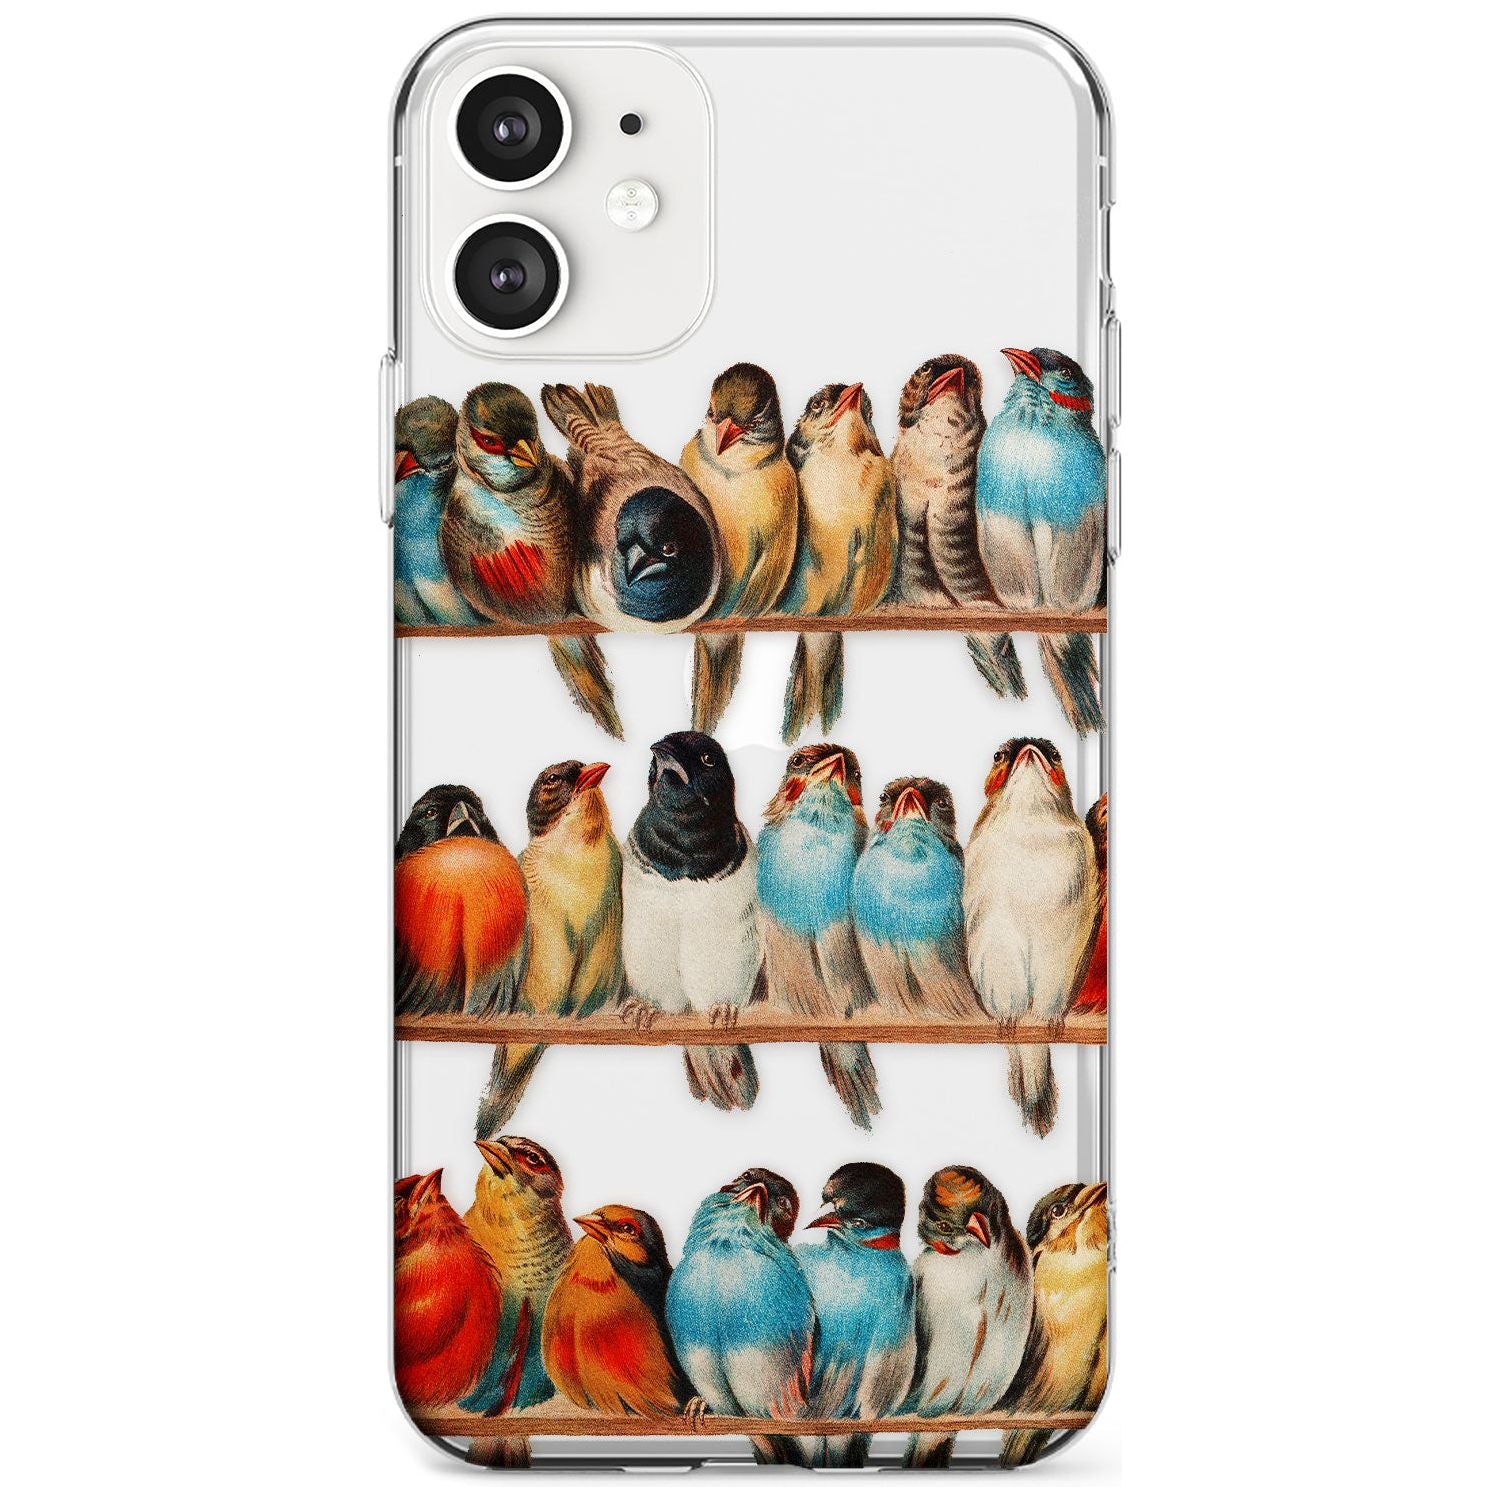 A Perch of Birds Slim TPU Phone Case for iPhone 11